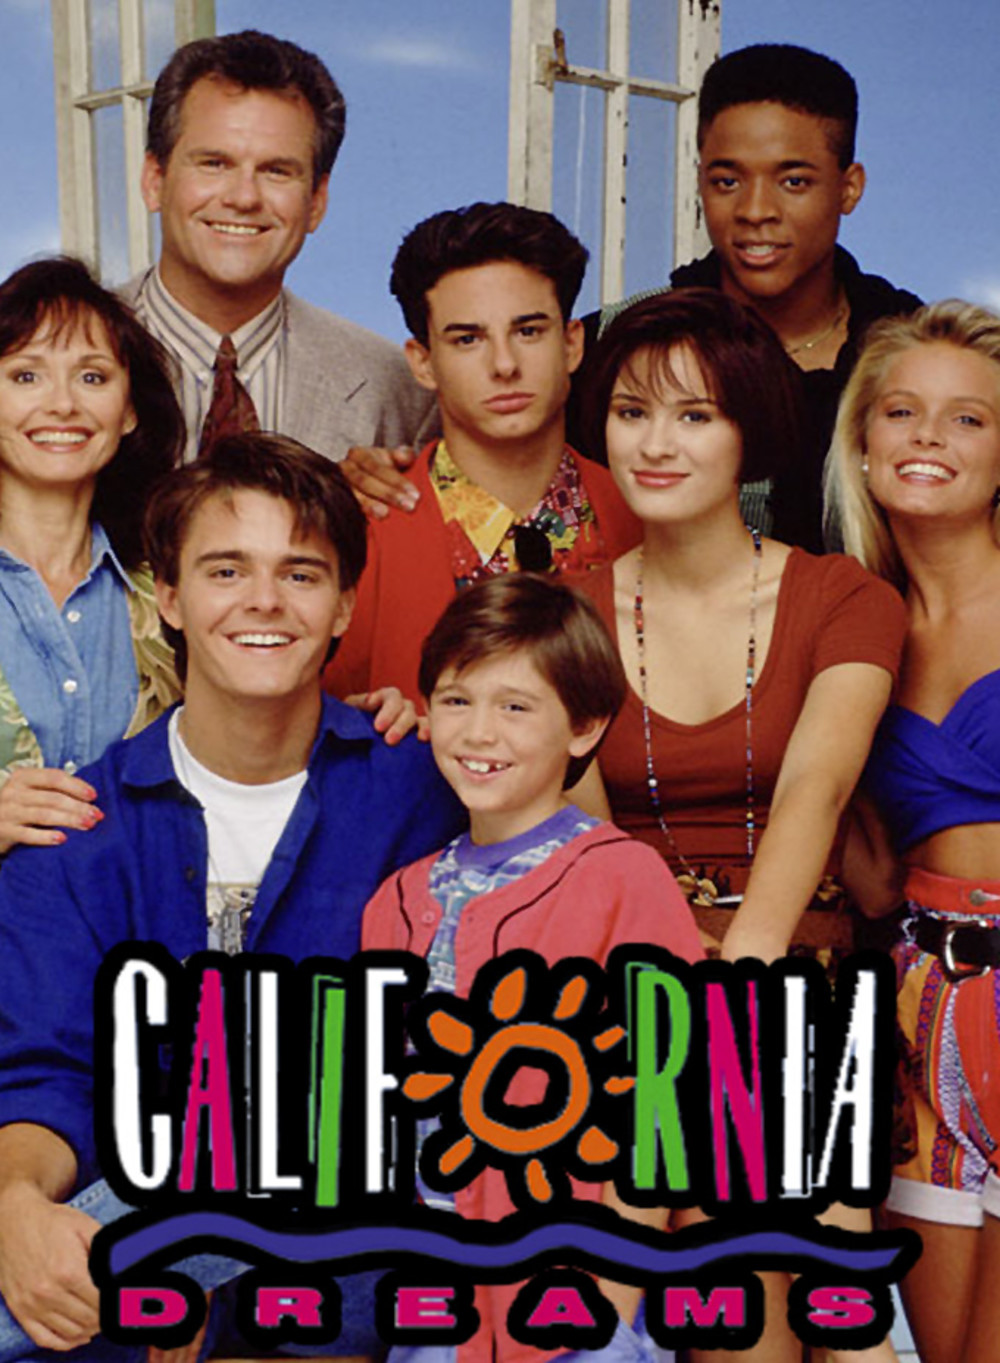 California Dreams - Iconic 90s TV Show - Channel 4 NBC TCC